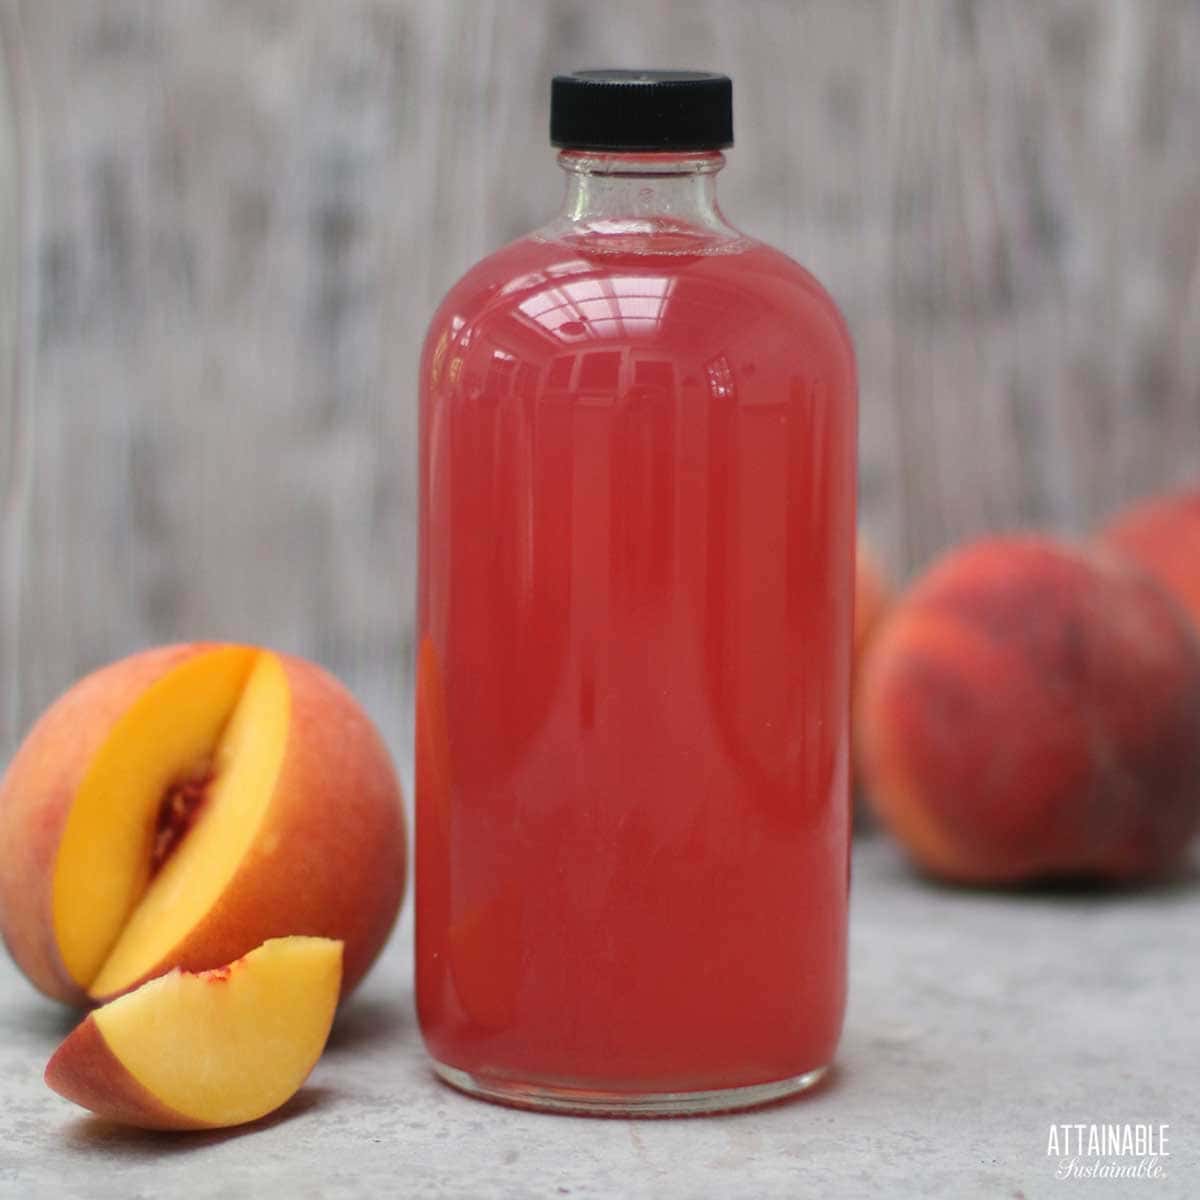 peach syrup in a jar with sliced peach alongside.